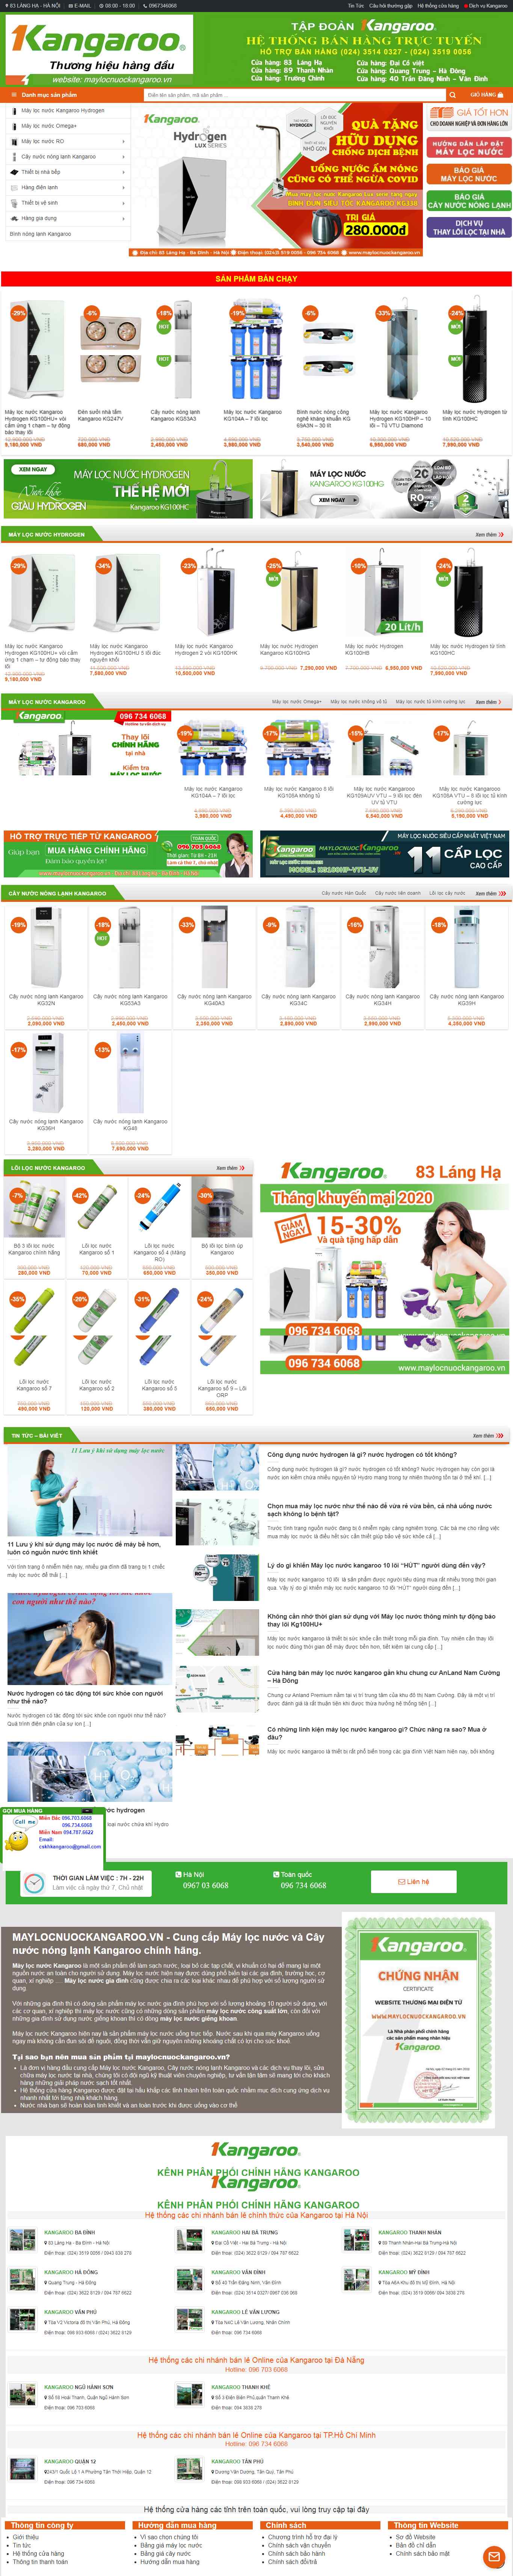 Thiết kế Website máy lọc nước - maylocnuockangaroo.vn